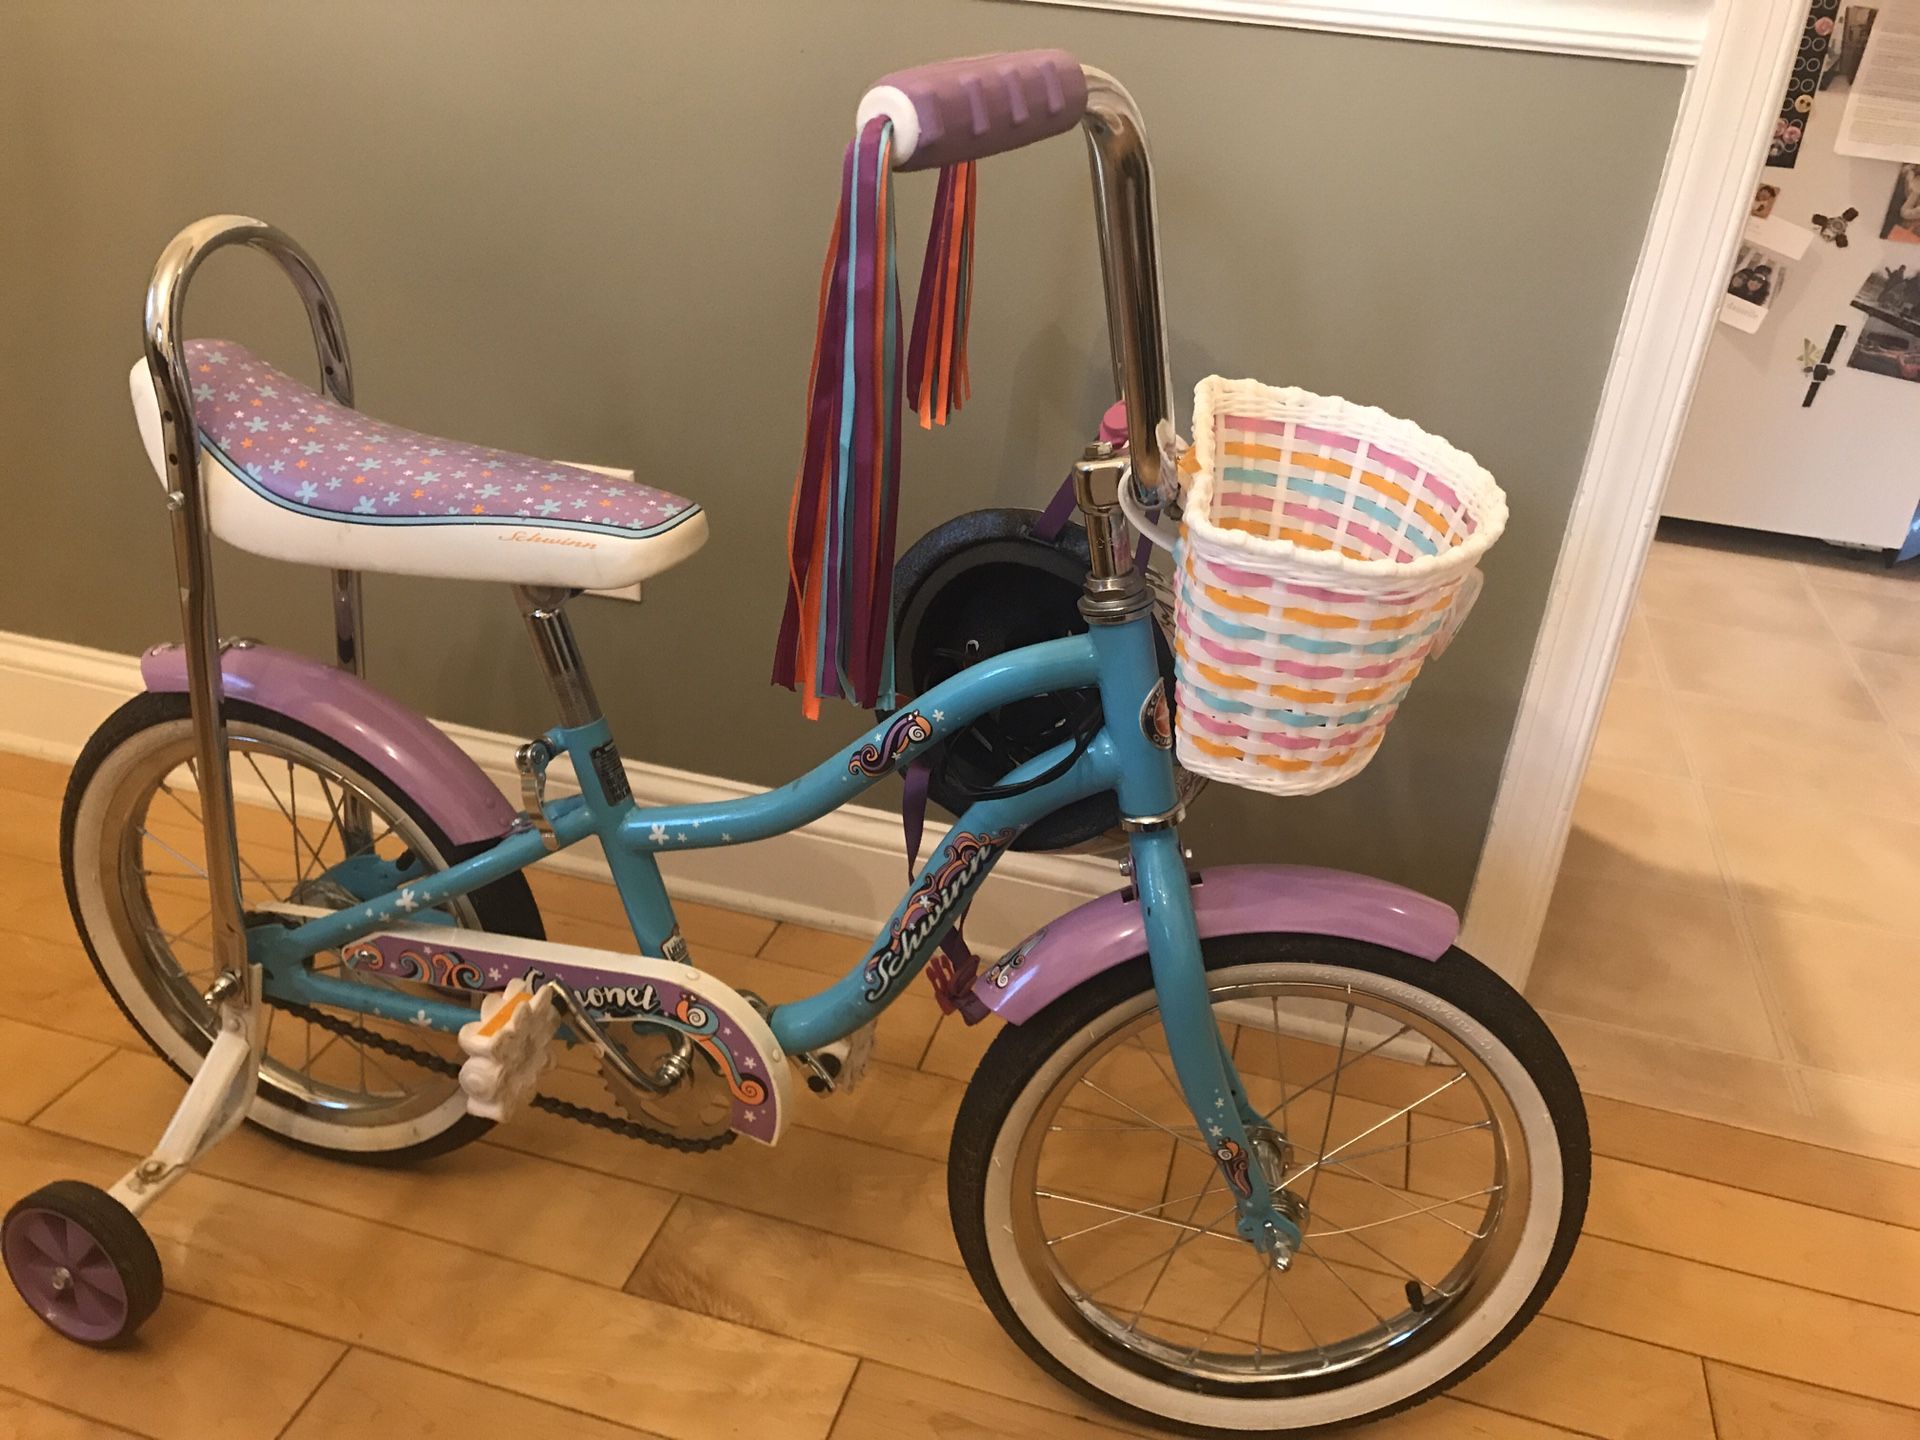 Bike for a little girl